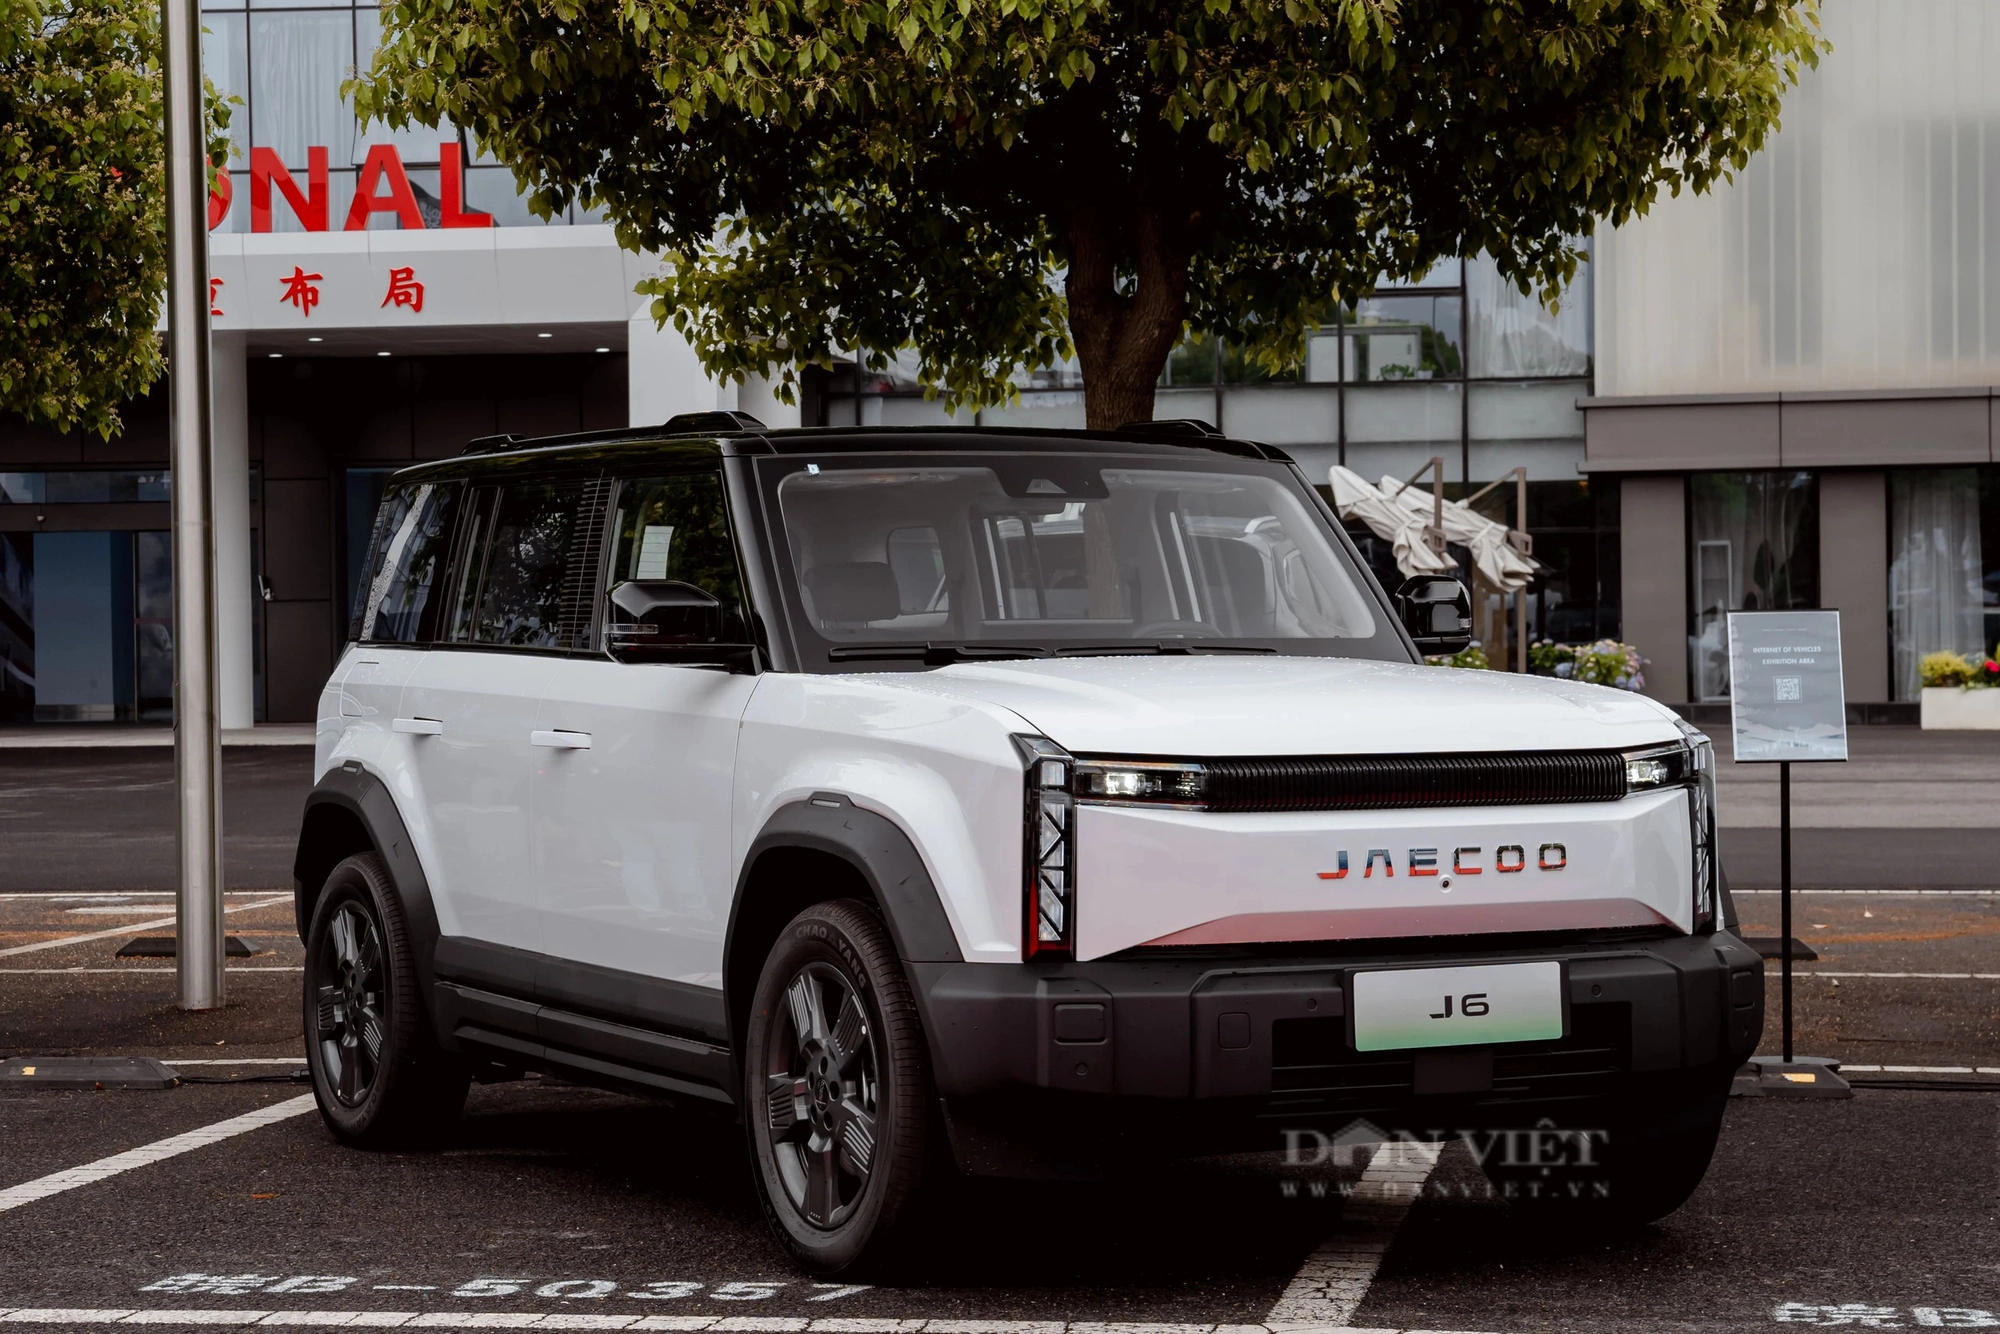 Trải nghiệm Jaecoo J6 sắp bán ở Việt Nam: SUV off-road chạy điện đầy hiện đại, đua tranh Suzuki Jimny- Ảnh 32.